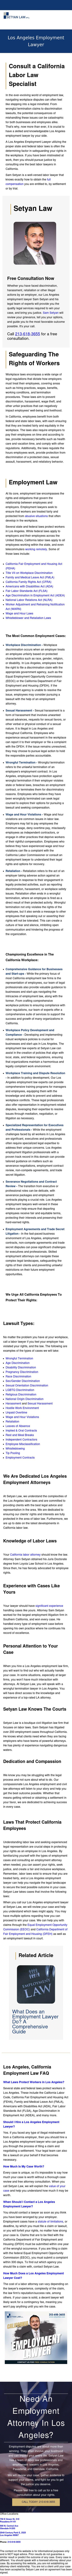 Employment Lawyers - Pasadena CA Lawyers